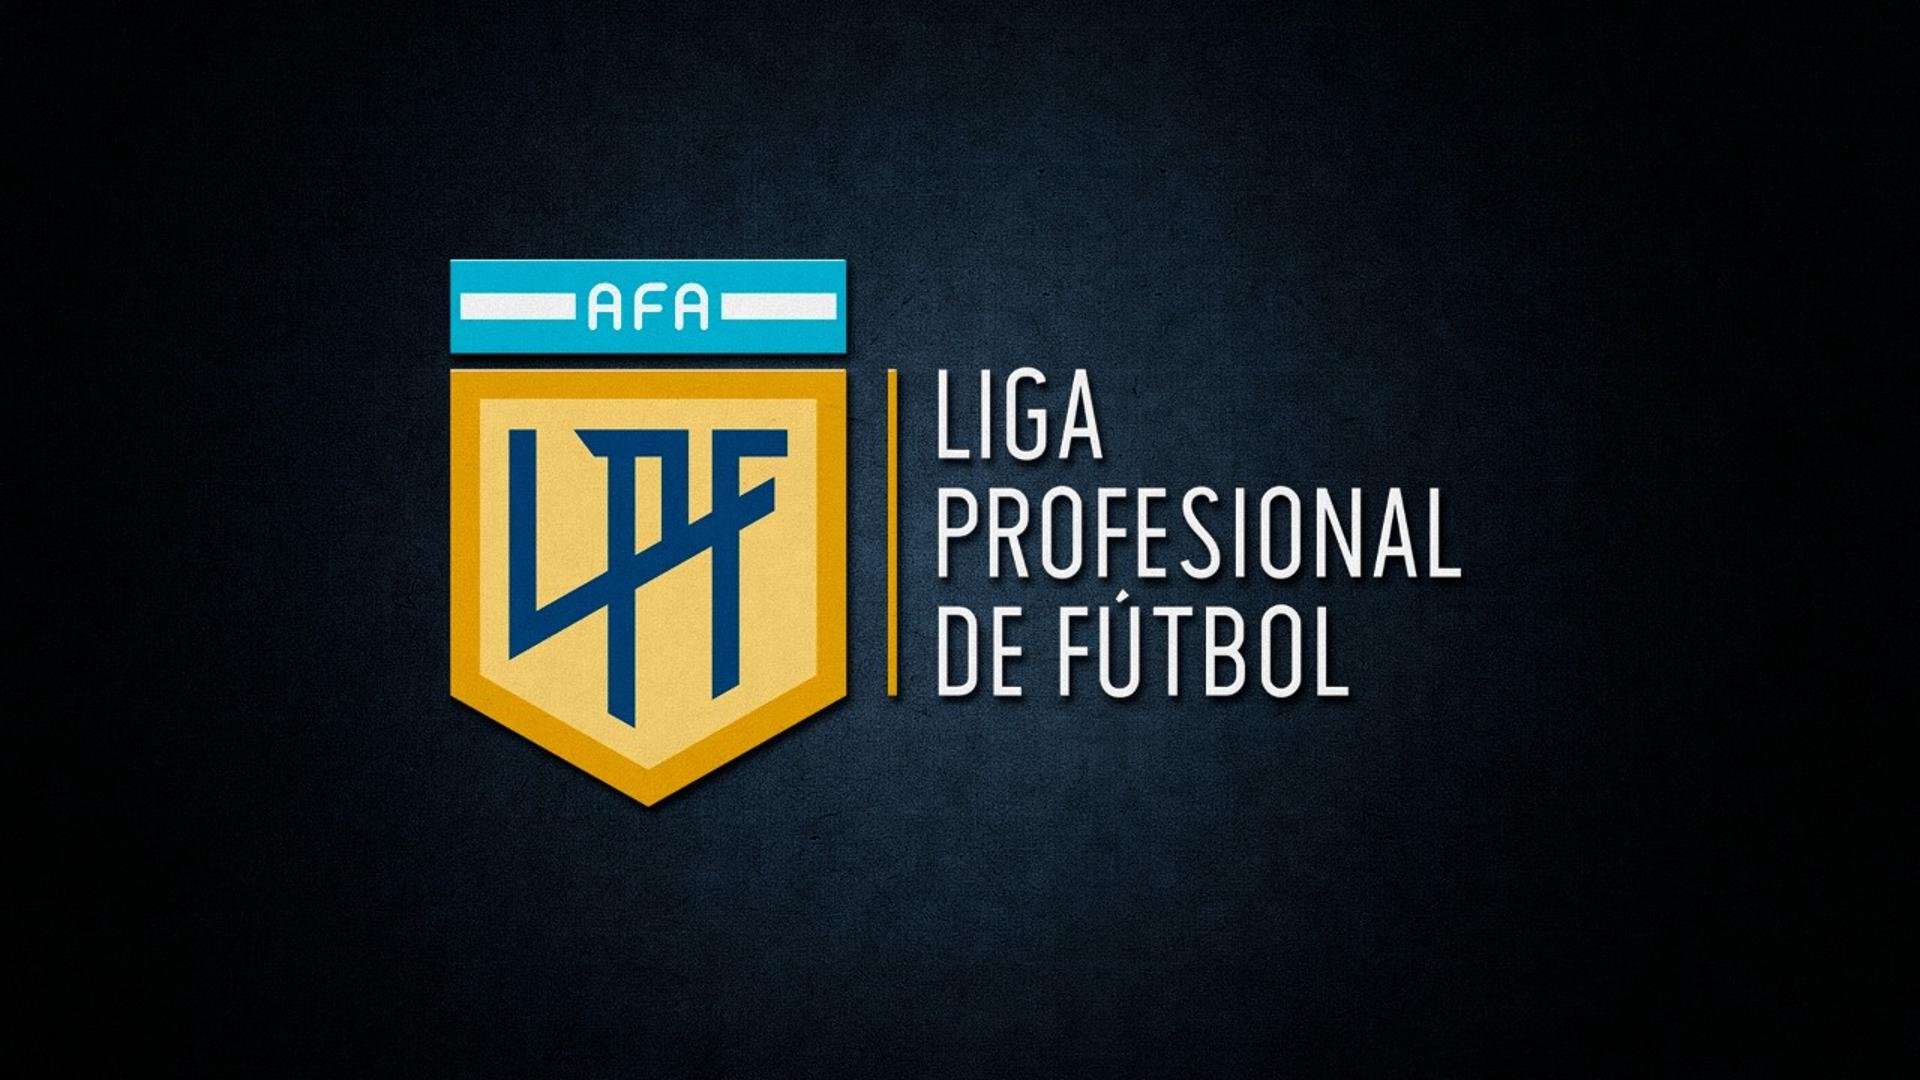 Partidos para hoy viernes 23 de junio; Primera Argentina, Uruguay y más